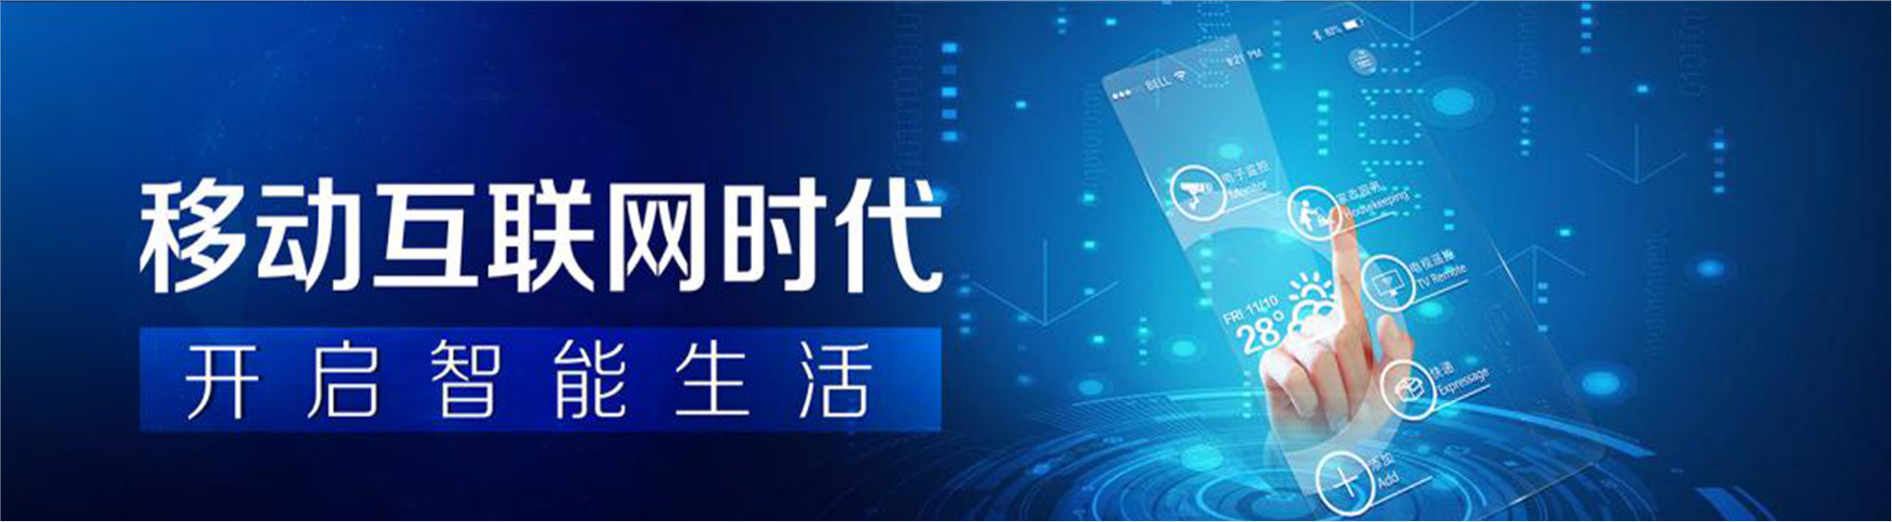 b2b平台销售、安庆本地b2b平台销售、安庆、安庆b2b平台销售